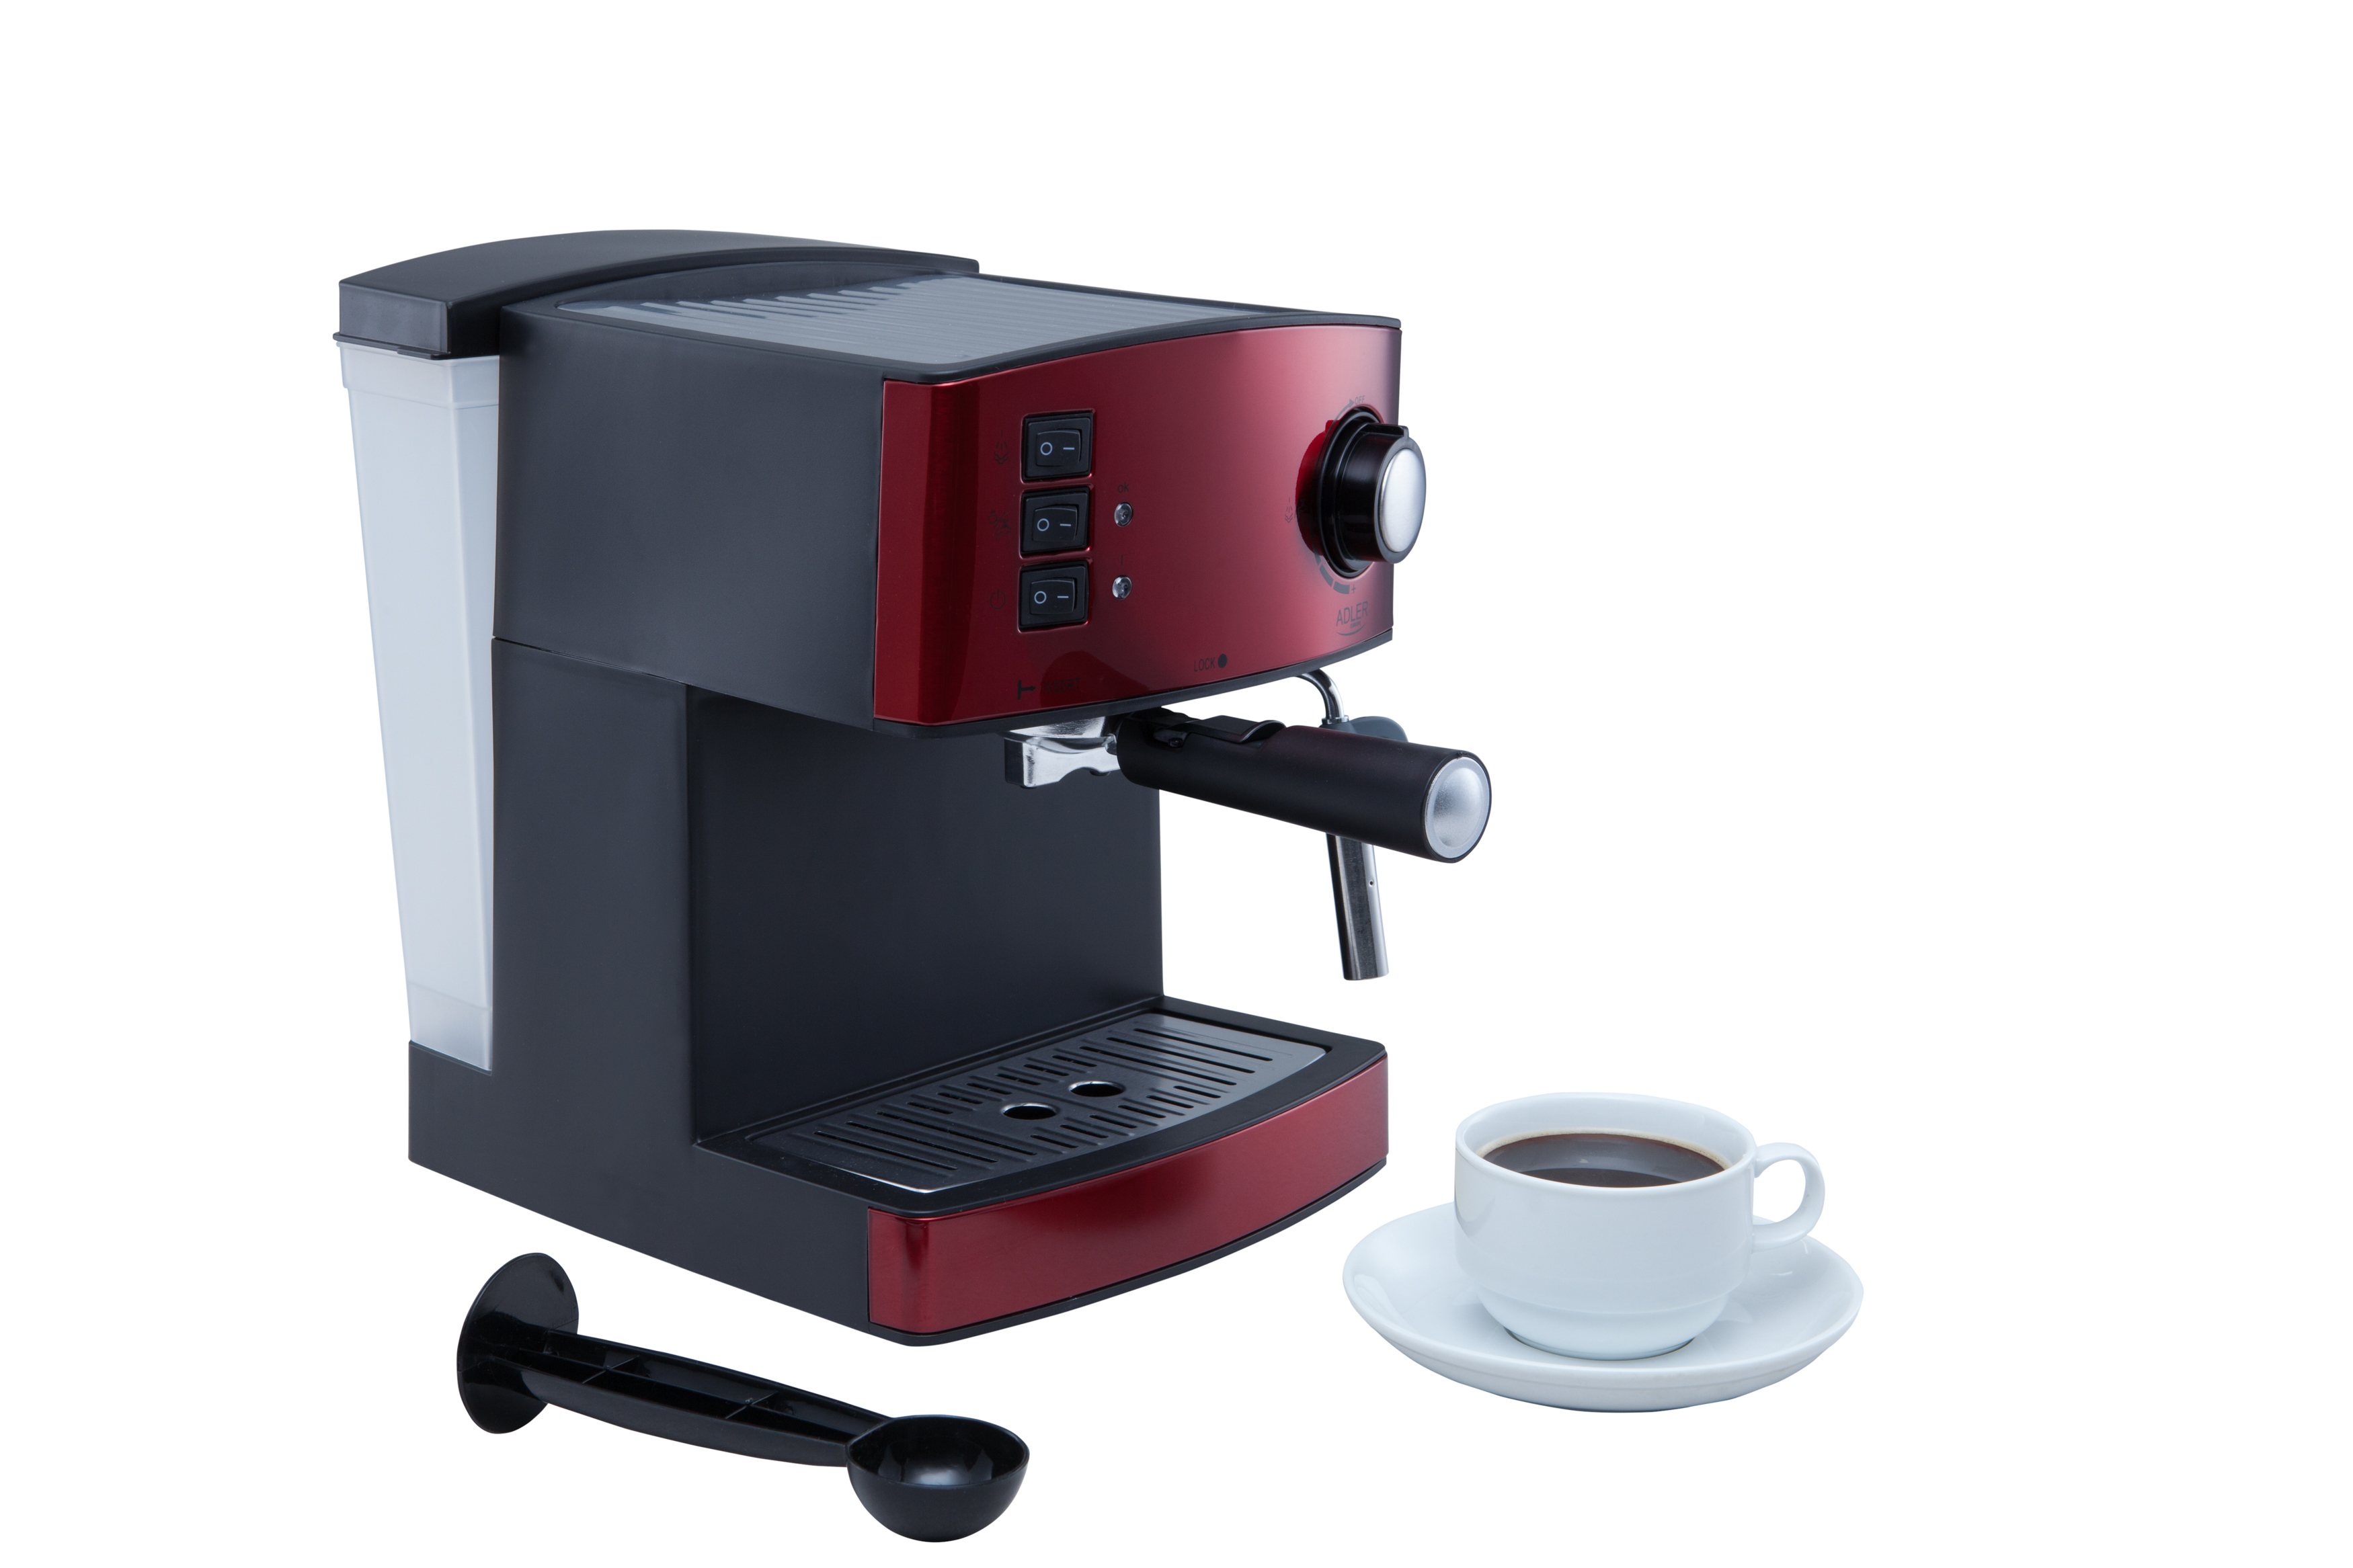 Macchina per caffè Adler AD 4404r espresso 1,6 L [AD4404R]